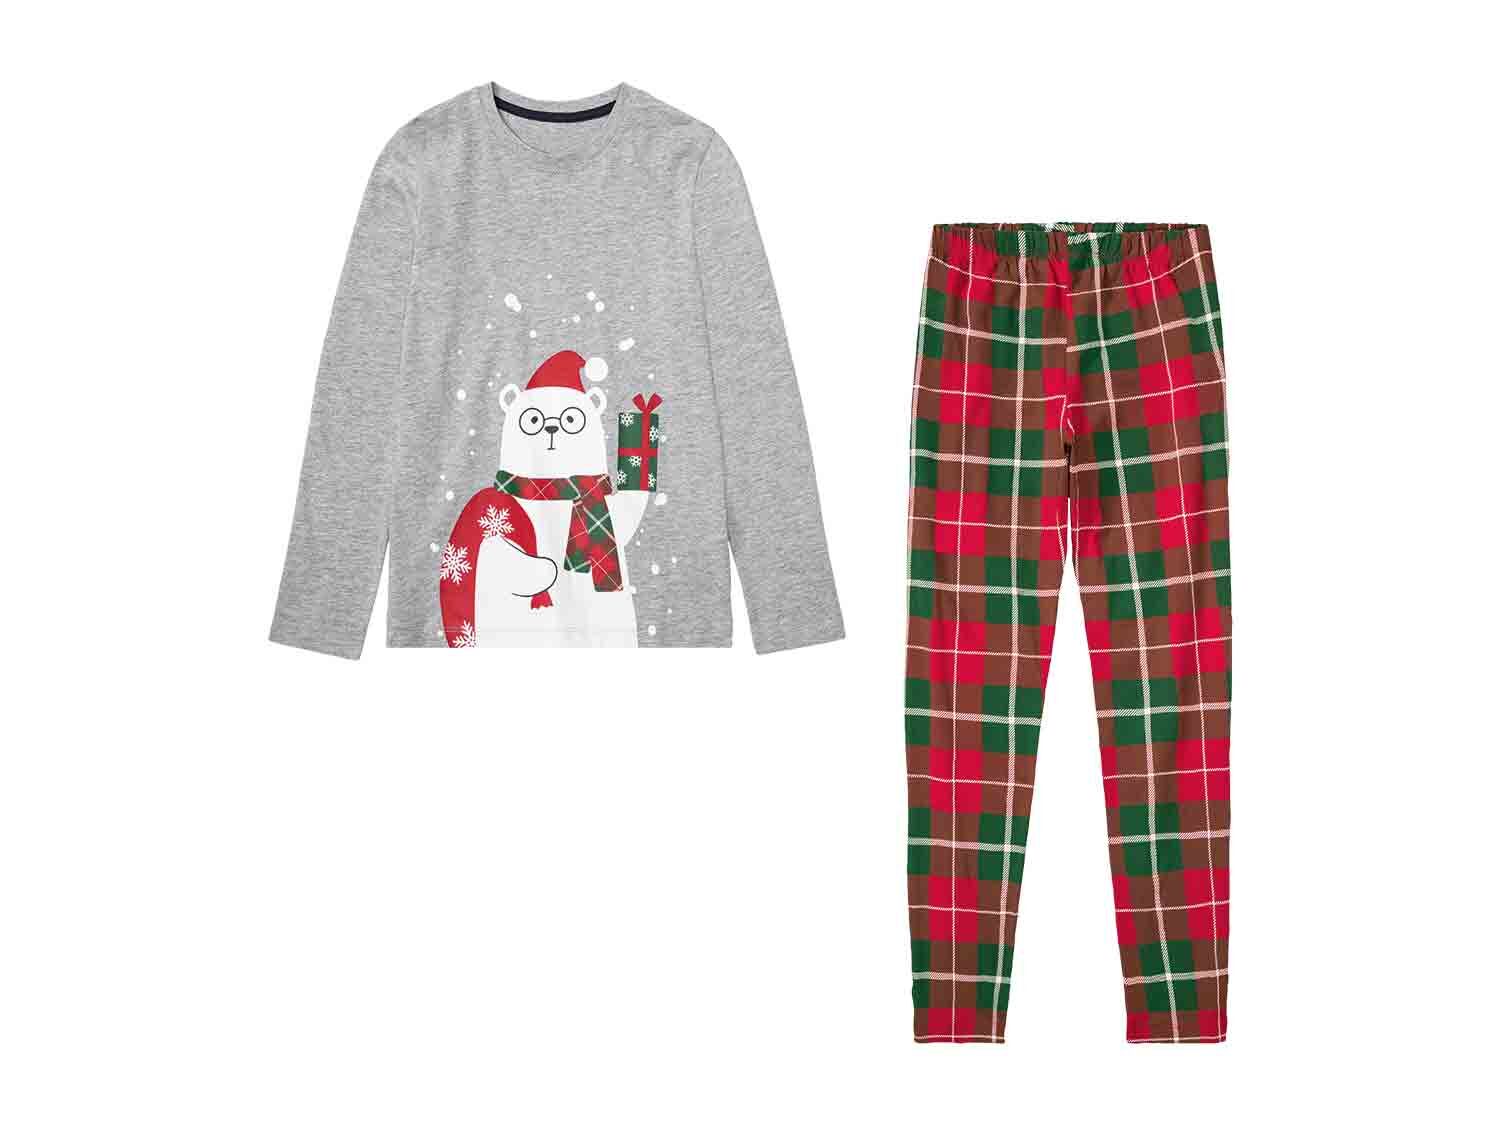 Pijama navideño infantil